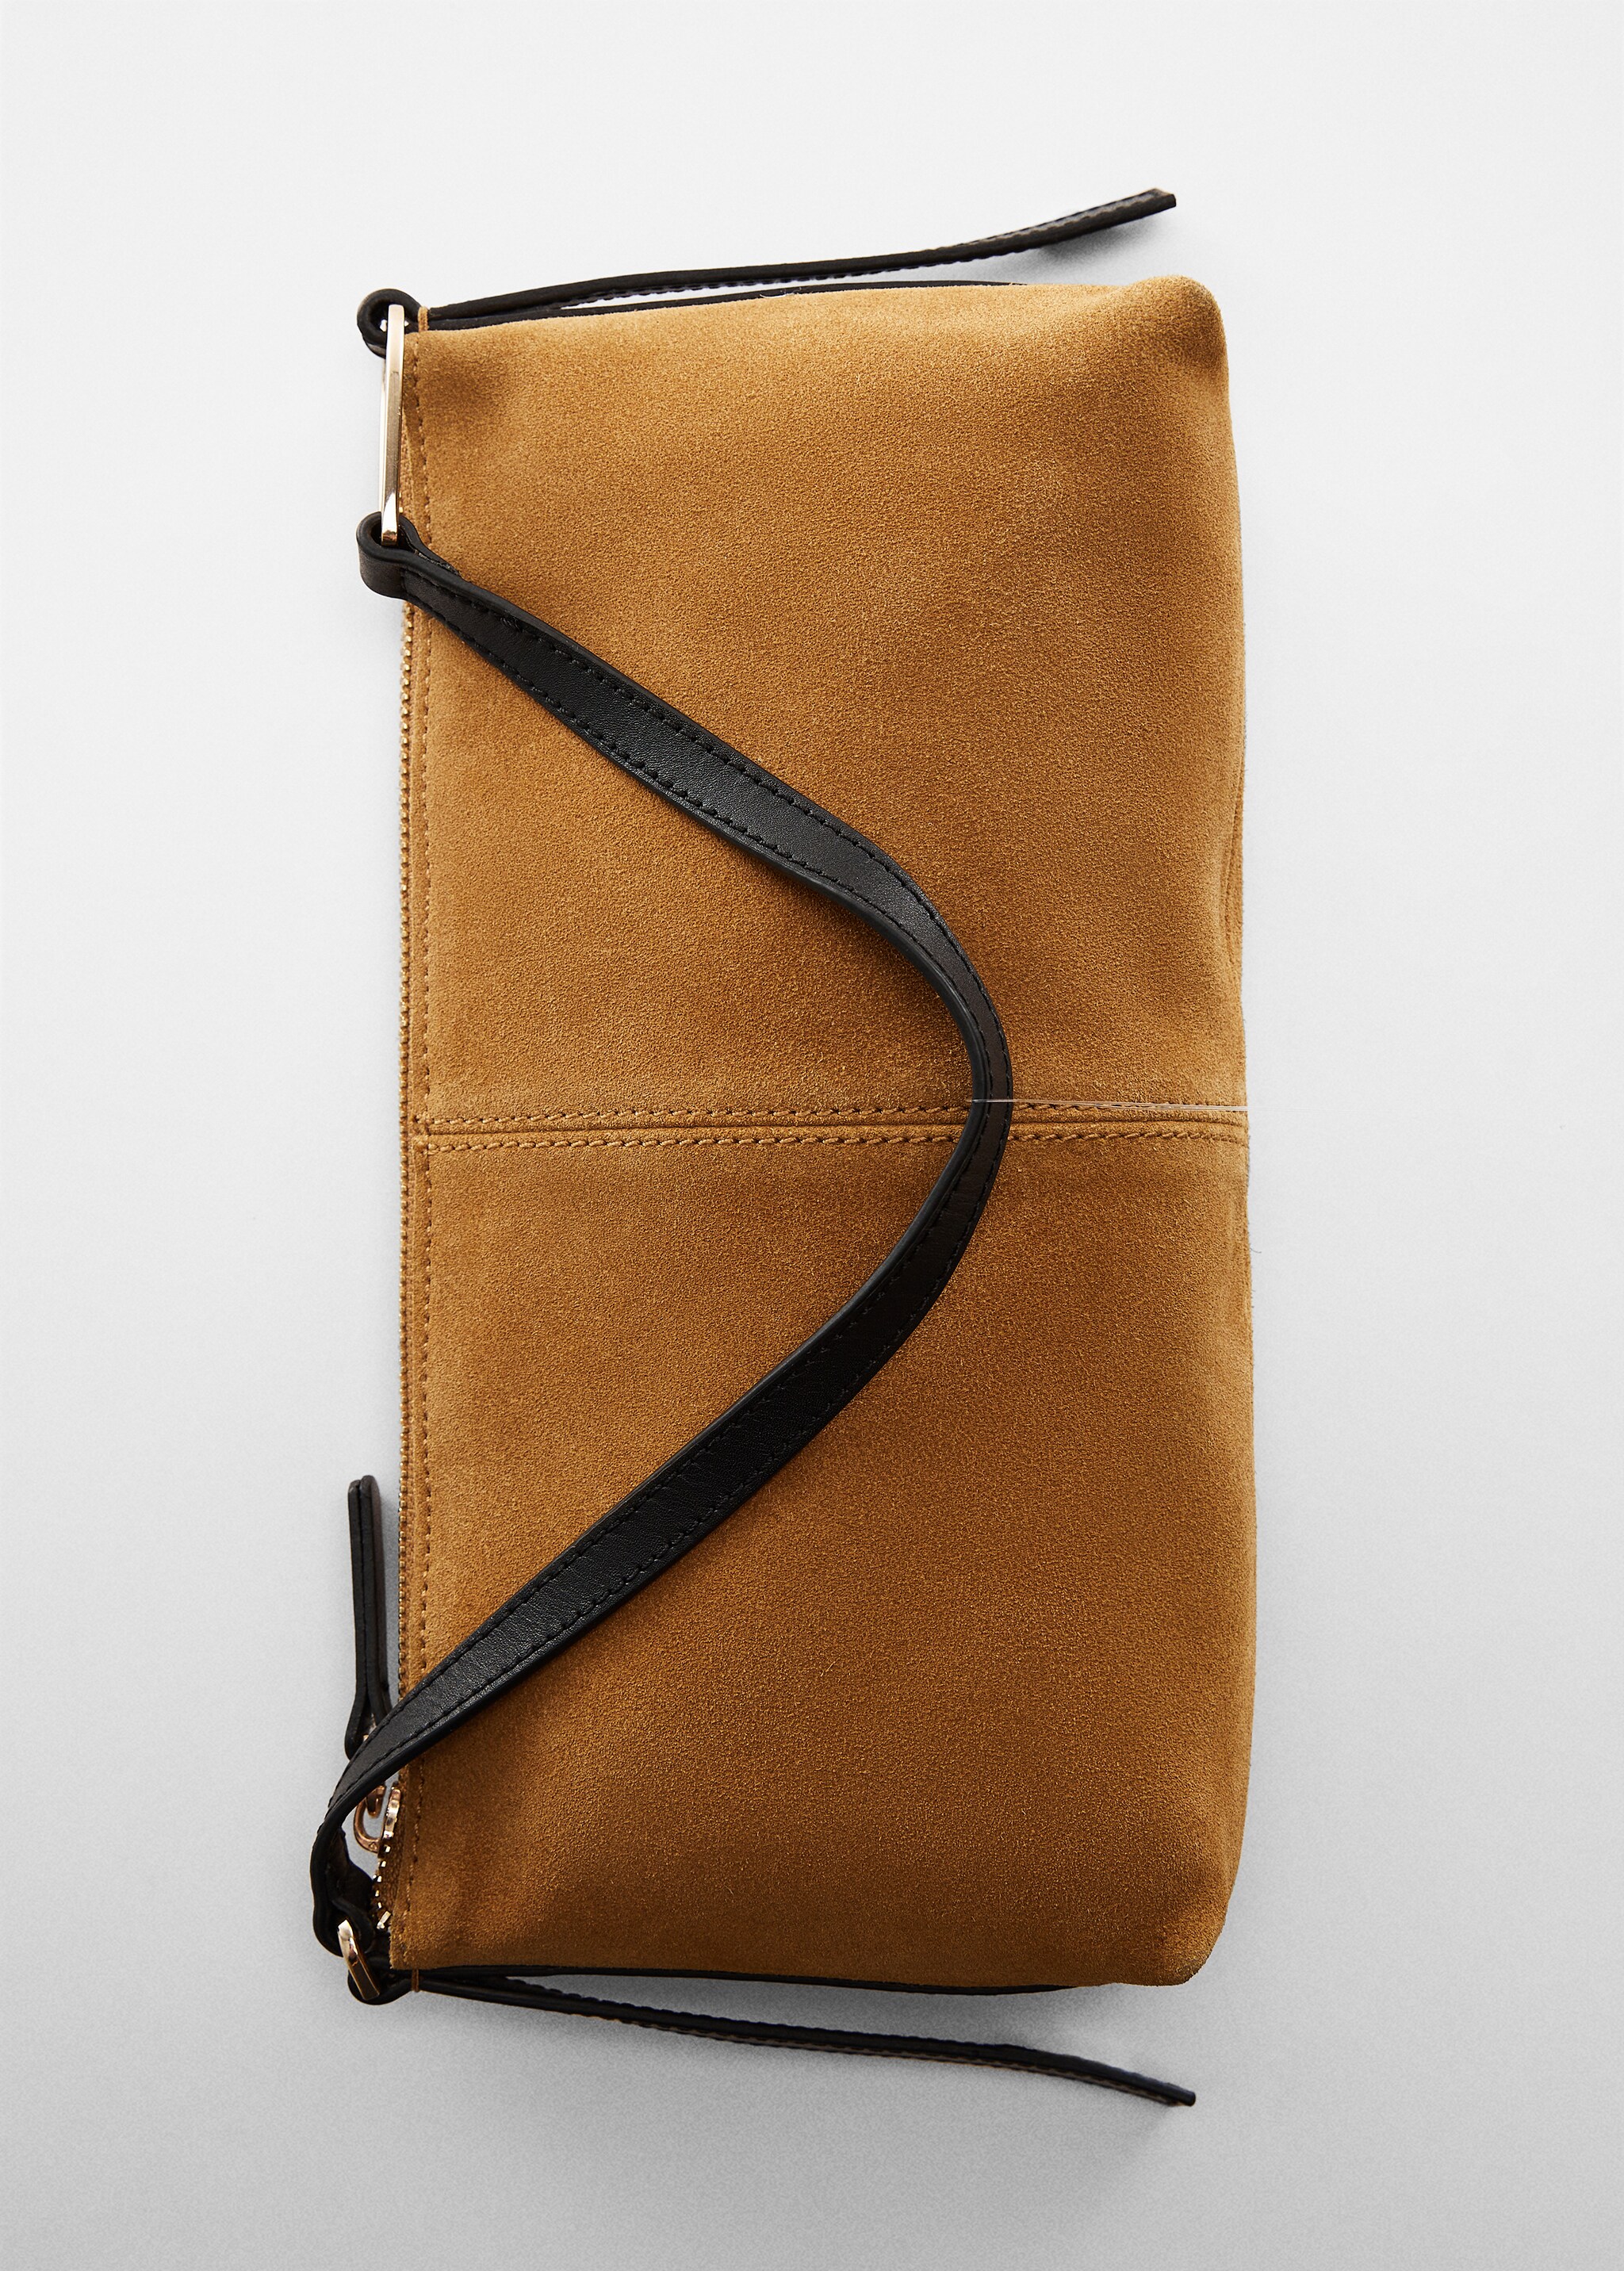 Leather shoulder bag - Details of the article 6